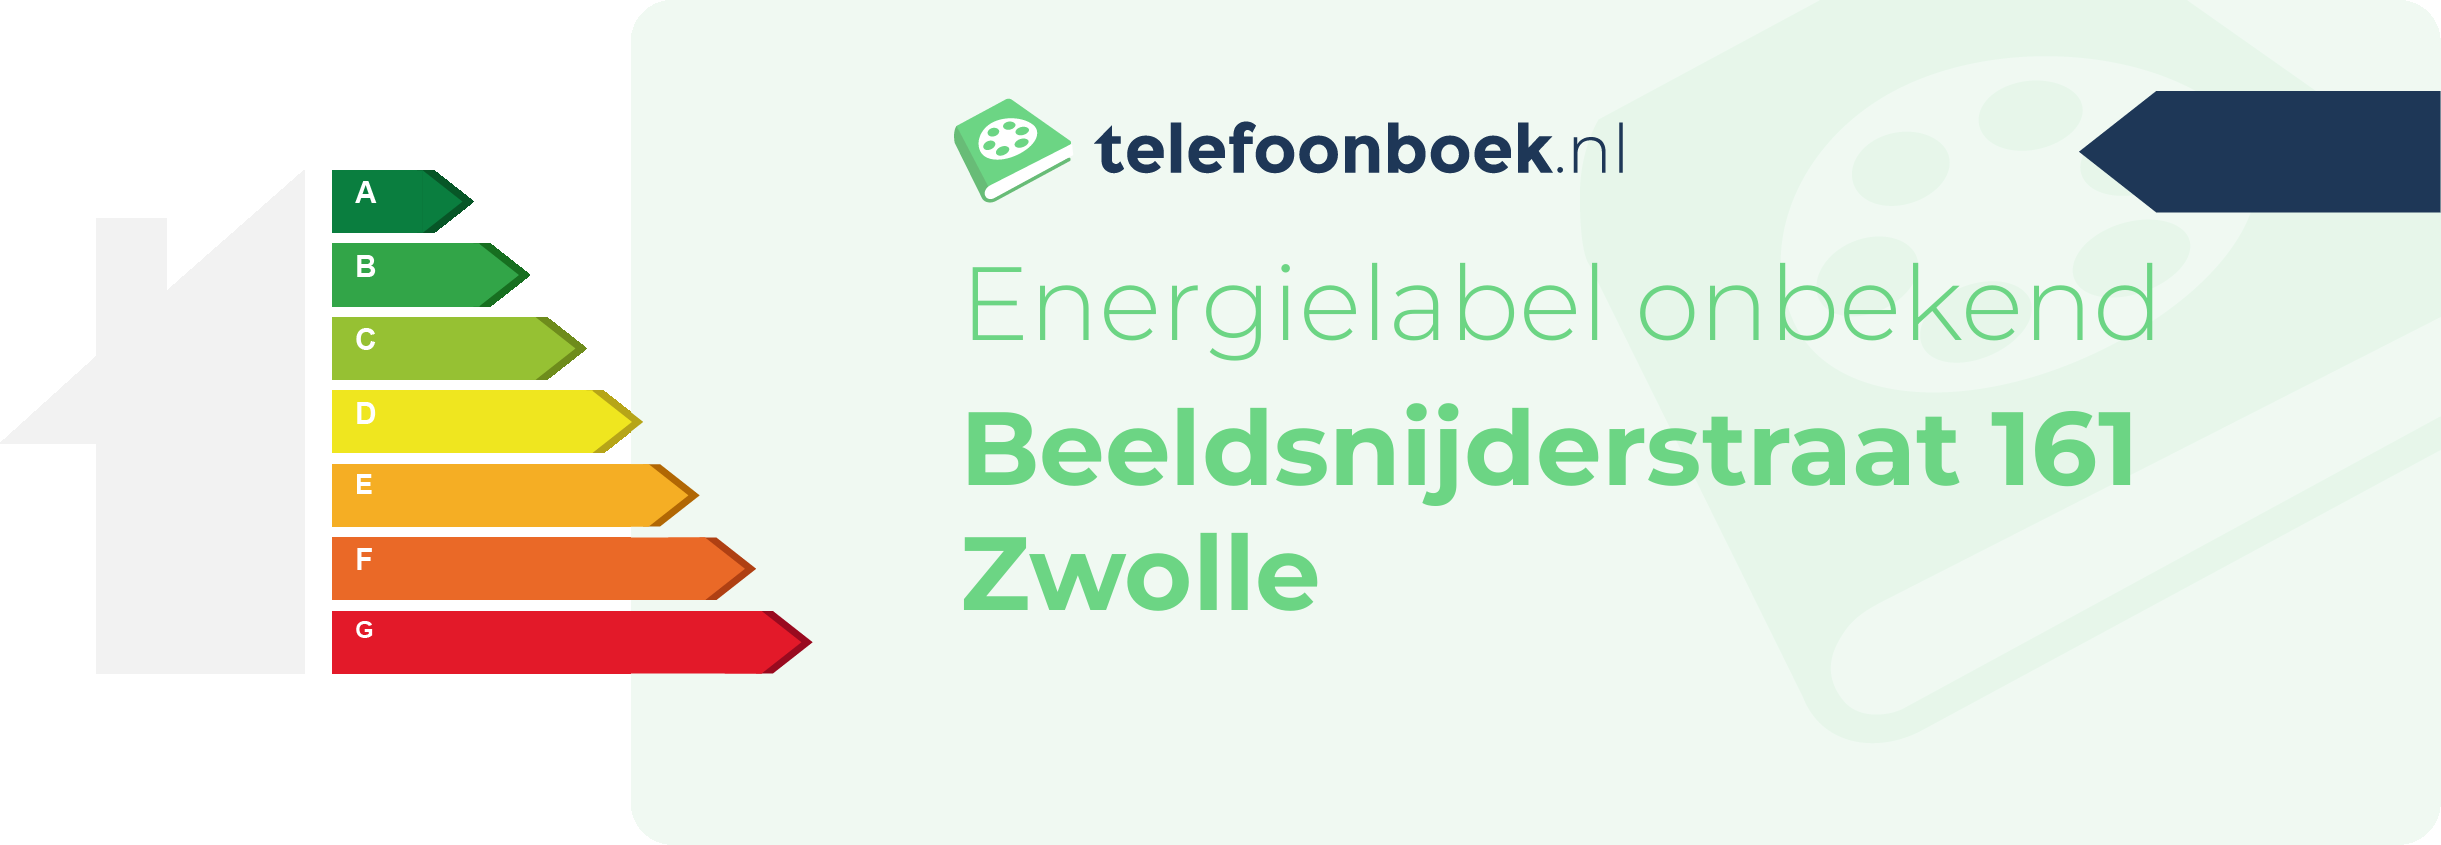 Energielabel Beeldsnijderstraat 161 Zwolle